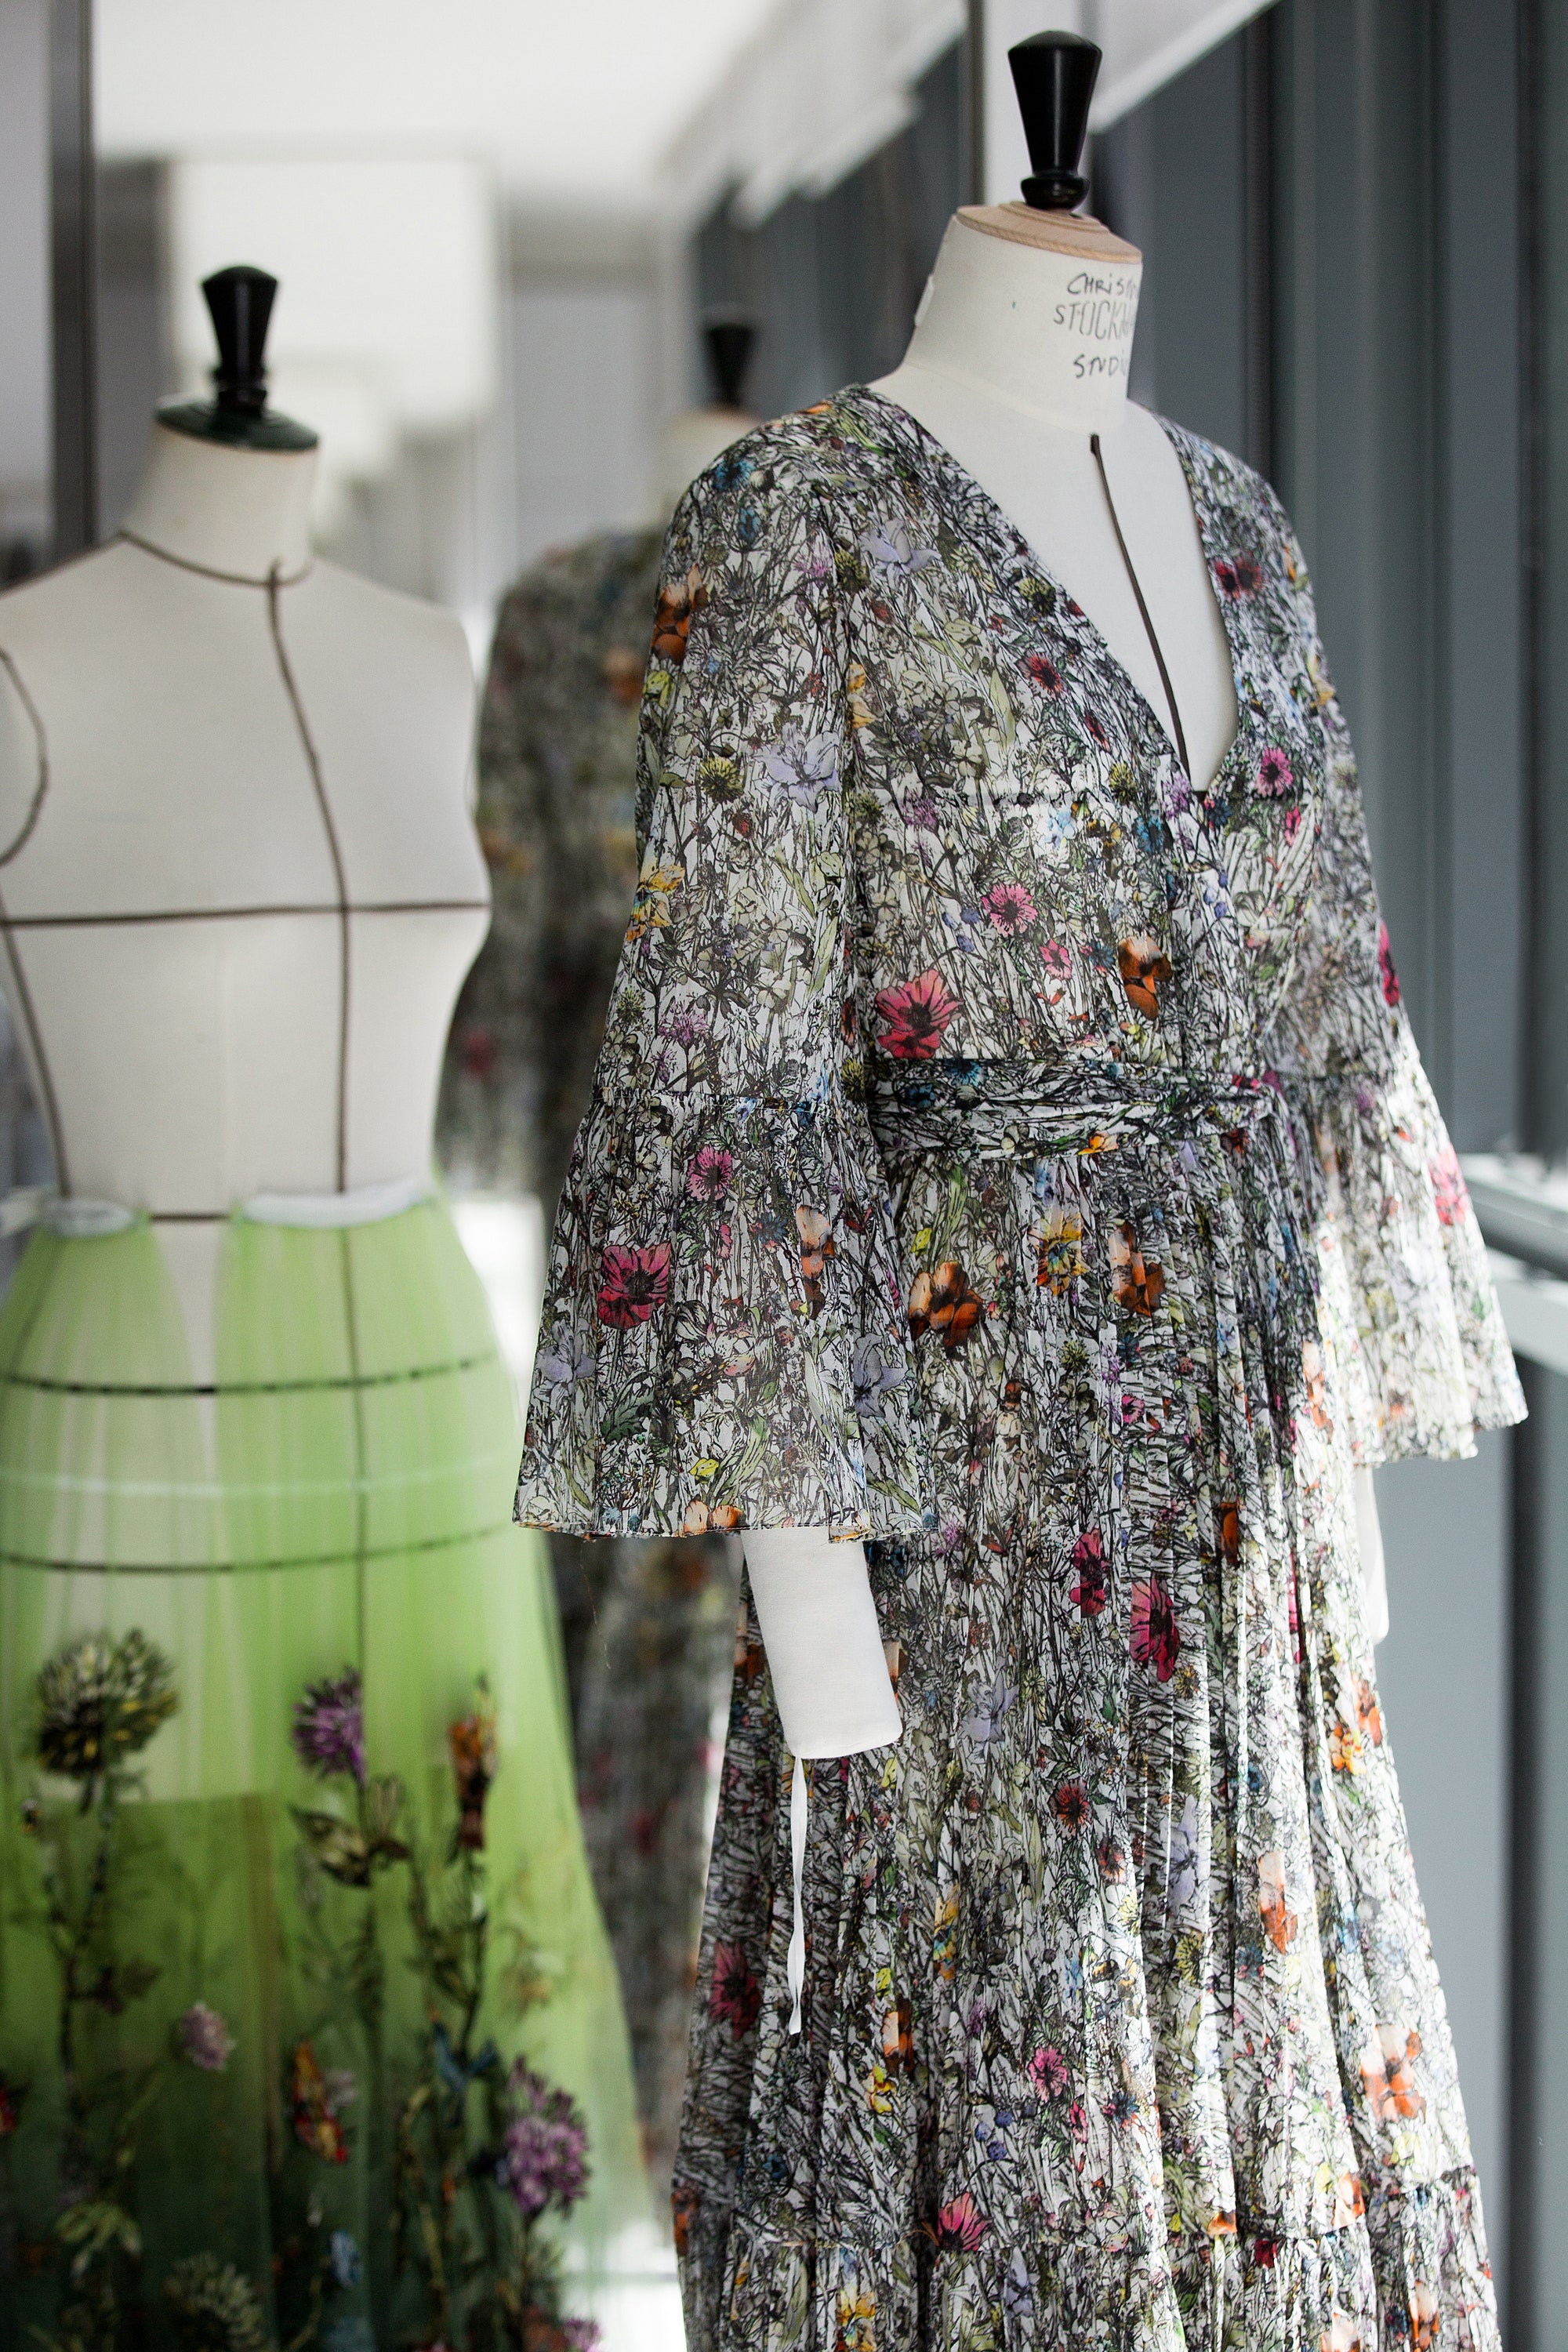 Мария Грация Кьюри: «Магия существует, и она может помочь в любой момент», — креативный директор Dior о традициях южной Апулии в круизной коллекции Dior 2021